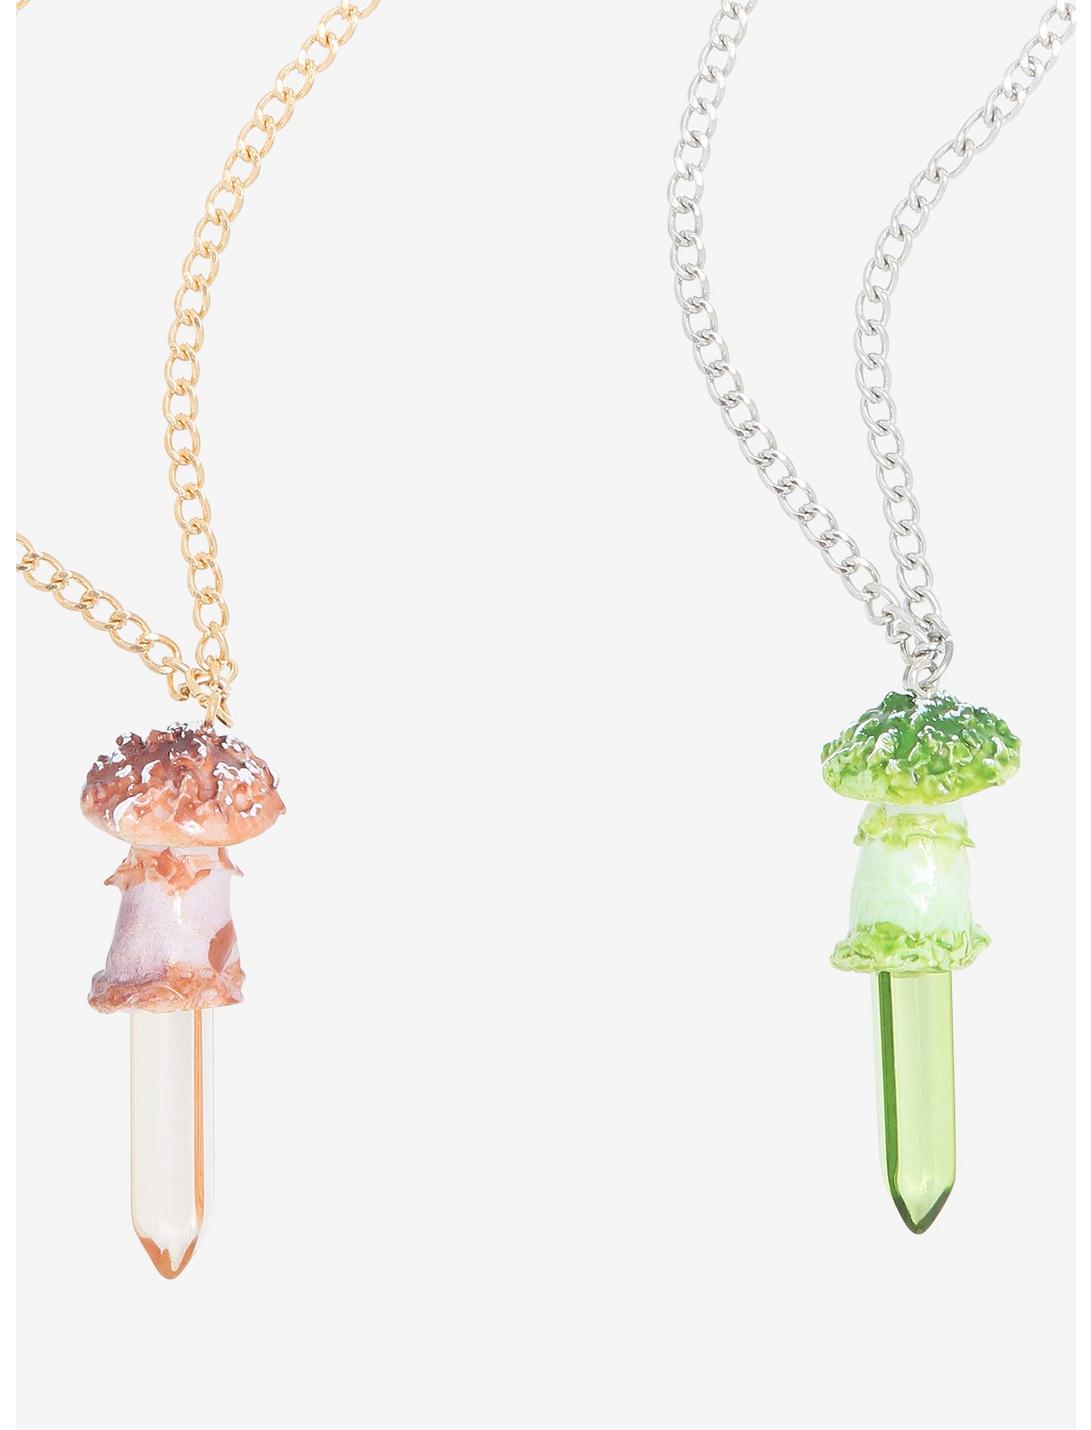 Mushroom Crystal Best Friend Necklace Set, , hi-res